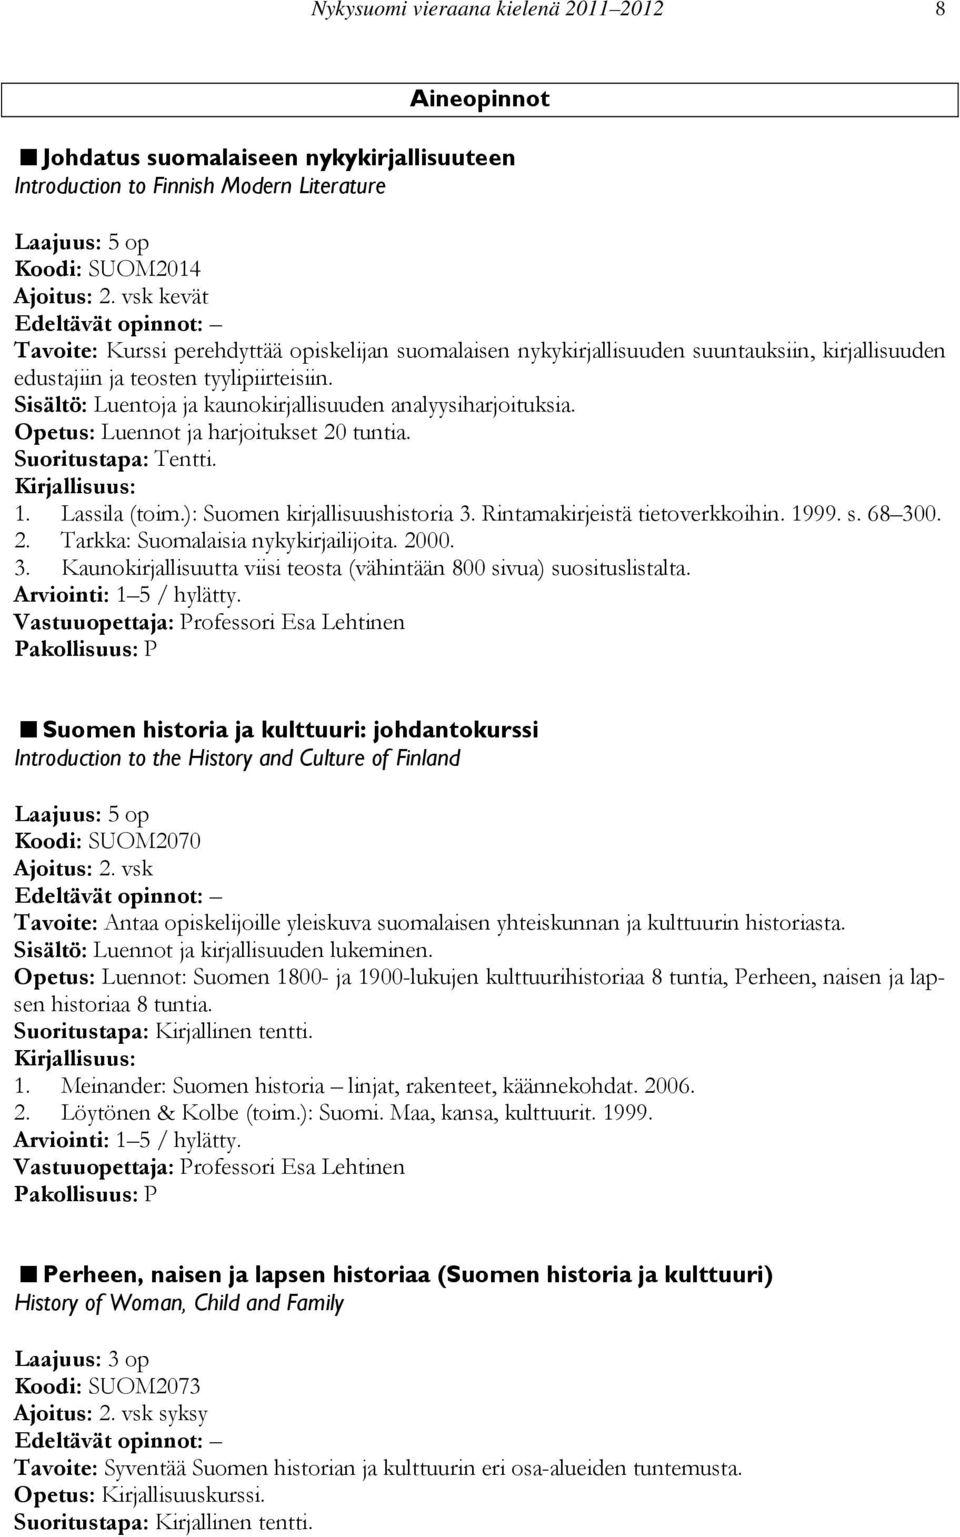 Sisältö: Luentoja ja kaunokirjallisuuden analyysiharjoituksia. Opetus: Luennot ja harjoitukset 20 tuntia. Suoritustapa: Tentti. 1. Lassila (toim.): Suomen kirjallisuushistoria 3.